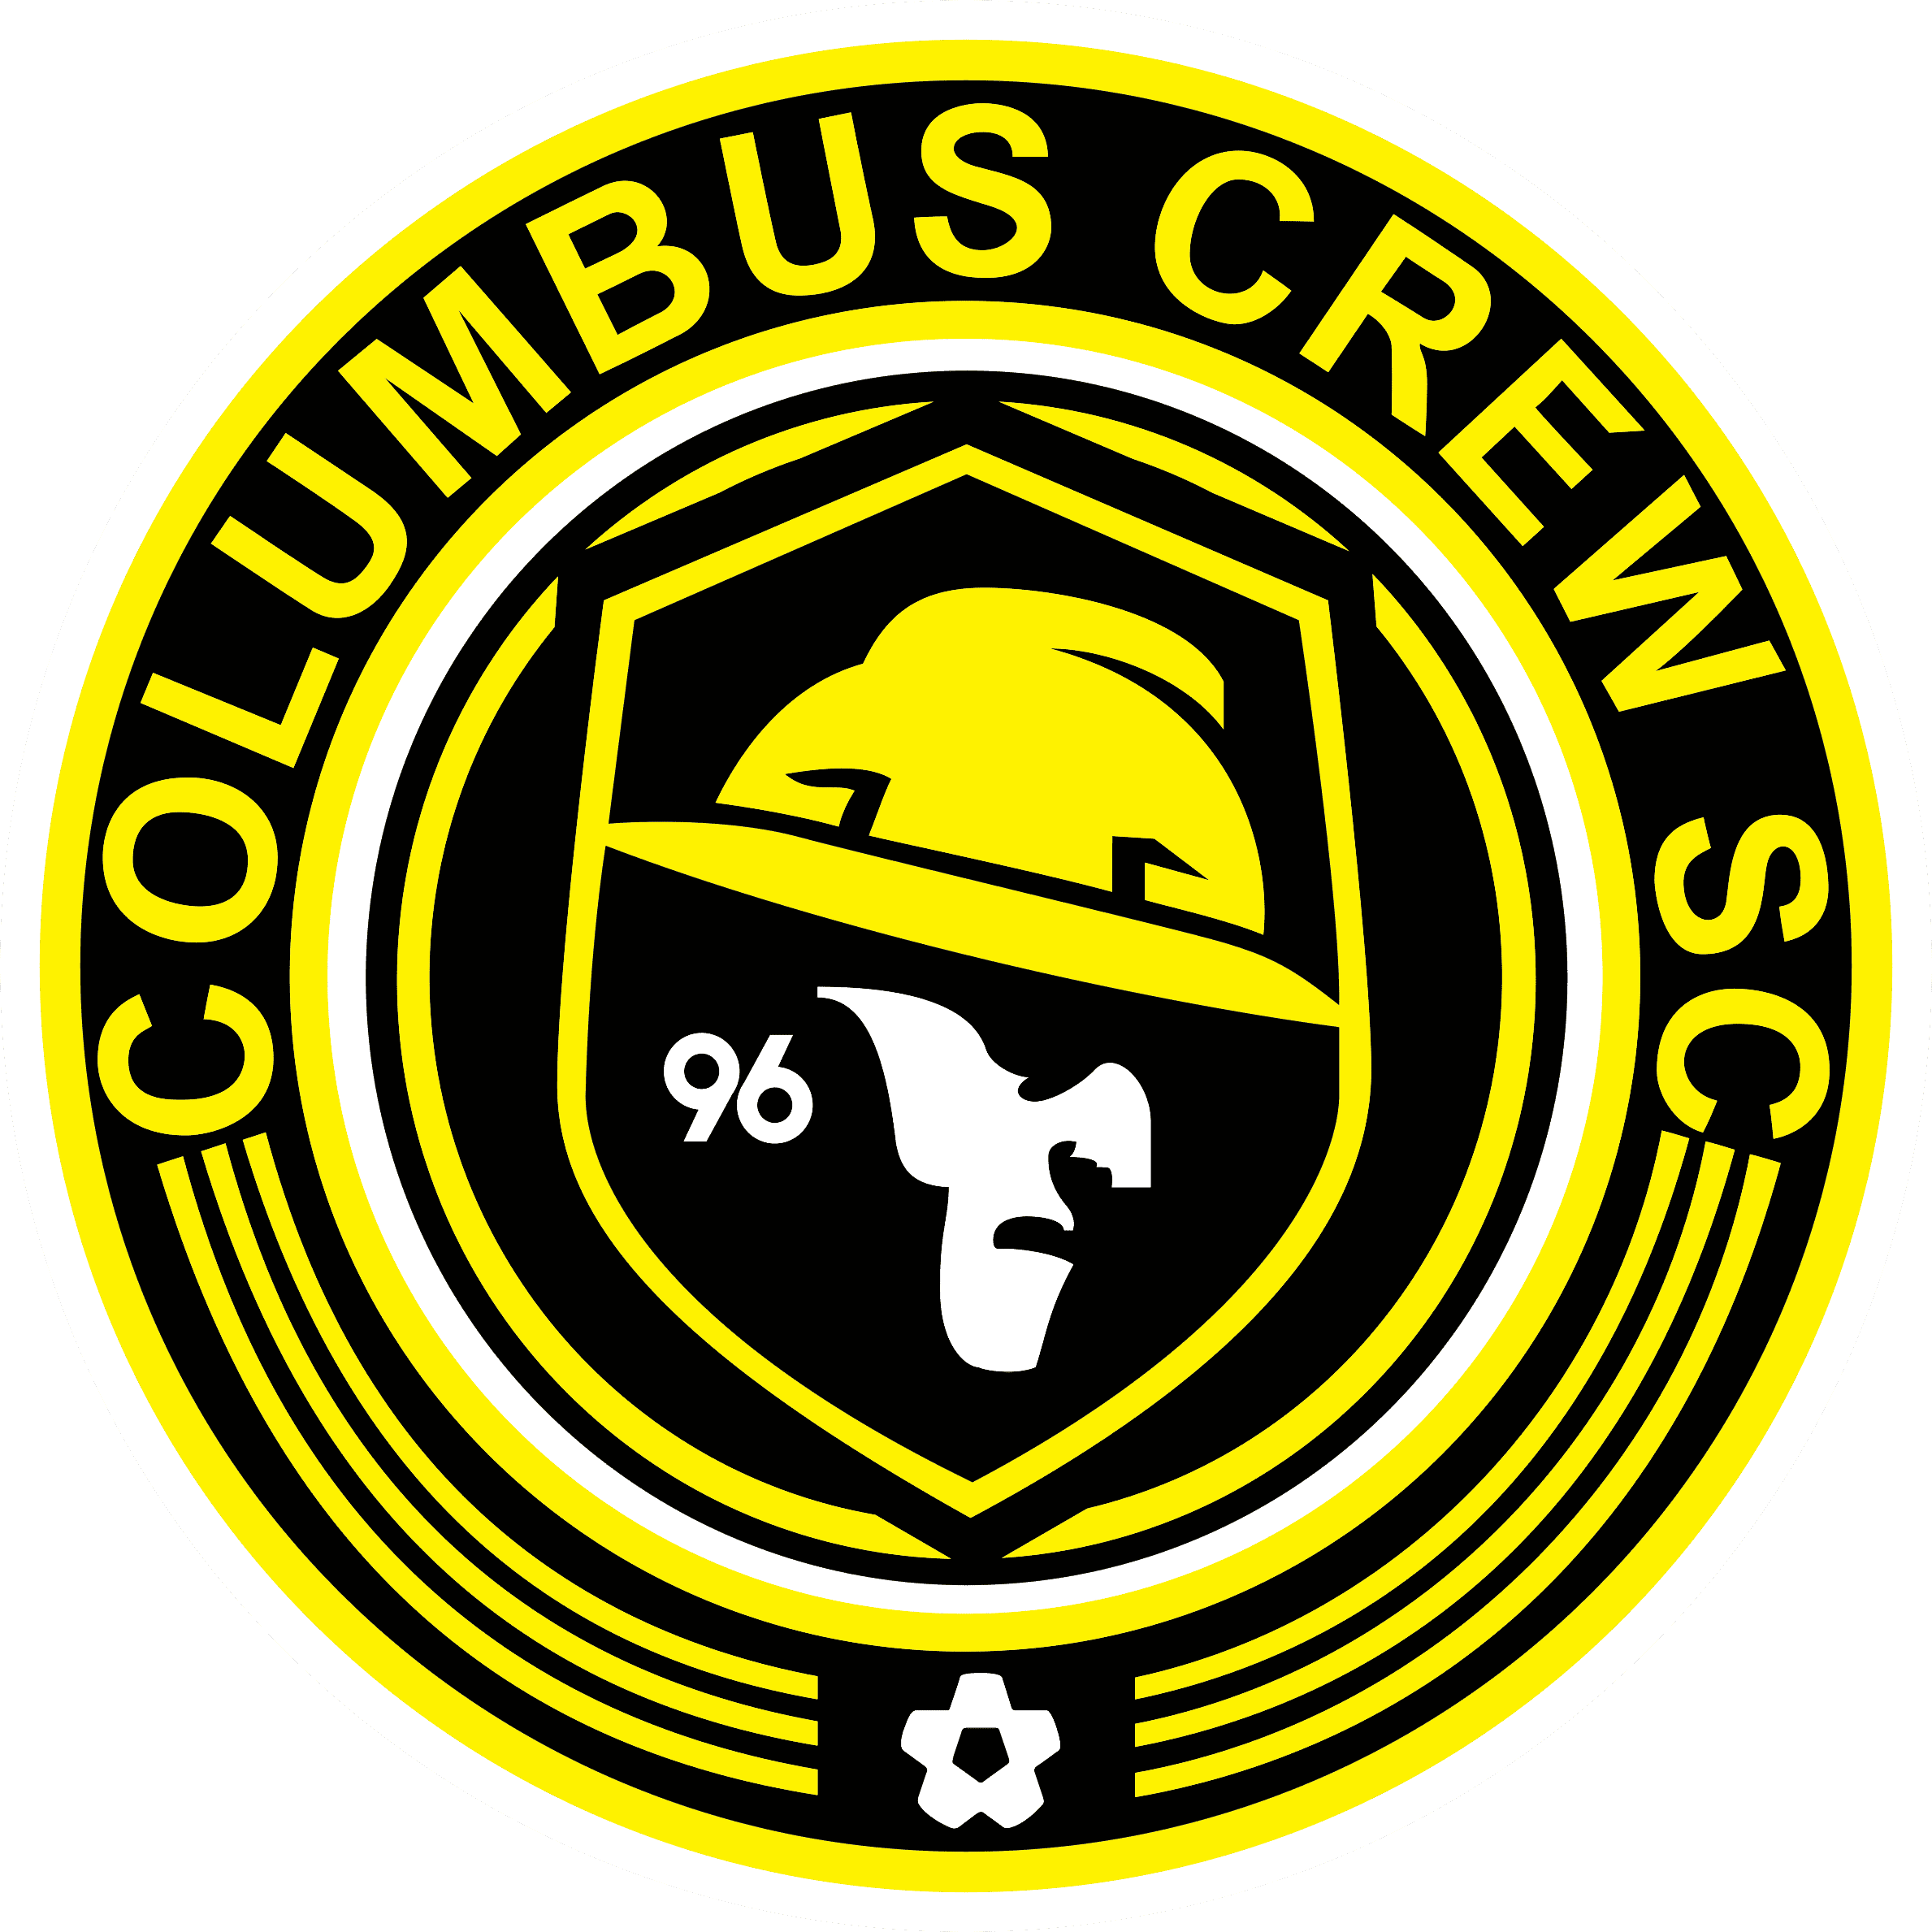 MLS Logo Columbus Crew SC, Columbus Crew SC SVG, Vector Columbus Crew SC,  Clipart Columbus Crew SC, Football Kit Columbus Crew SC, SVG, DXF, PNG,  Soccer Logo Vector Columbus Crew SC, EPS